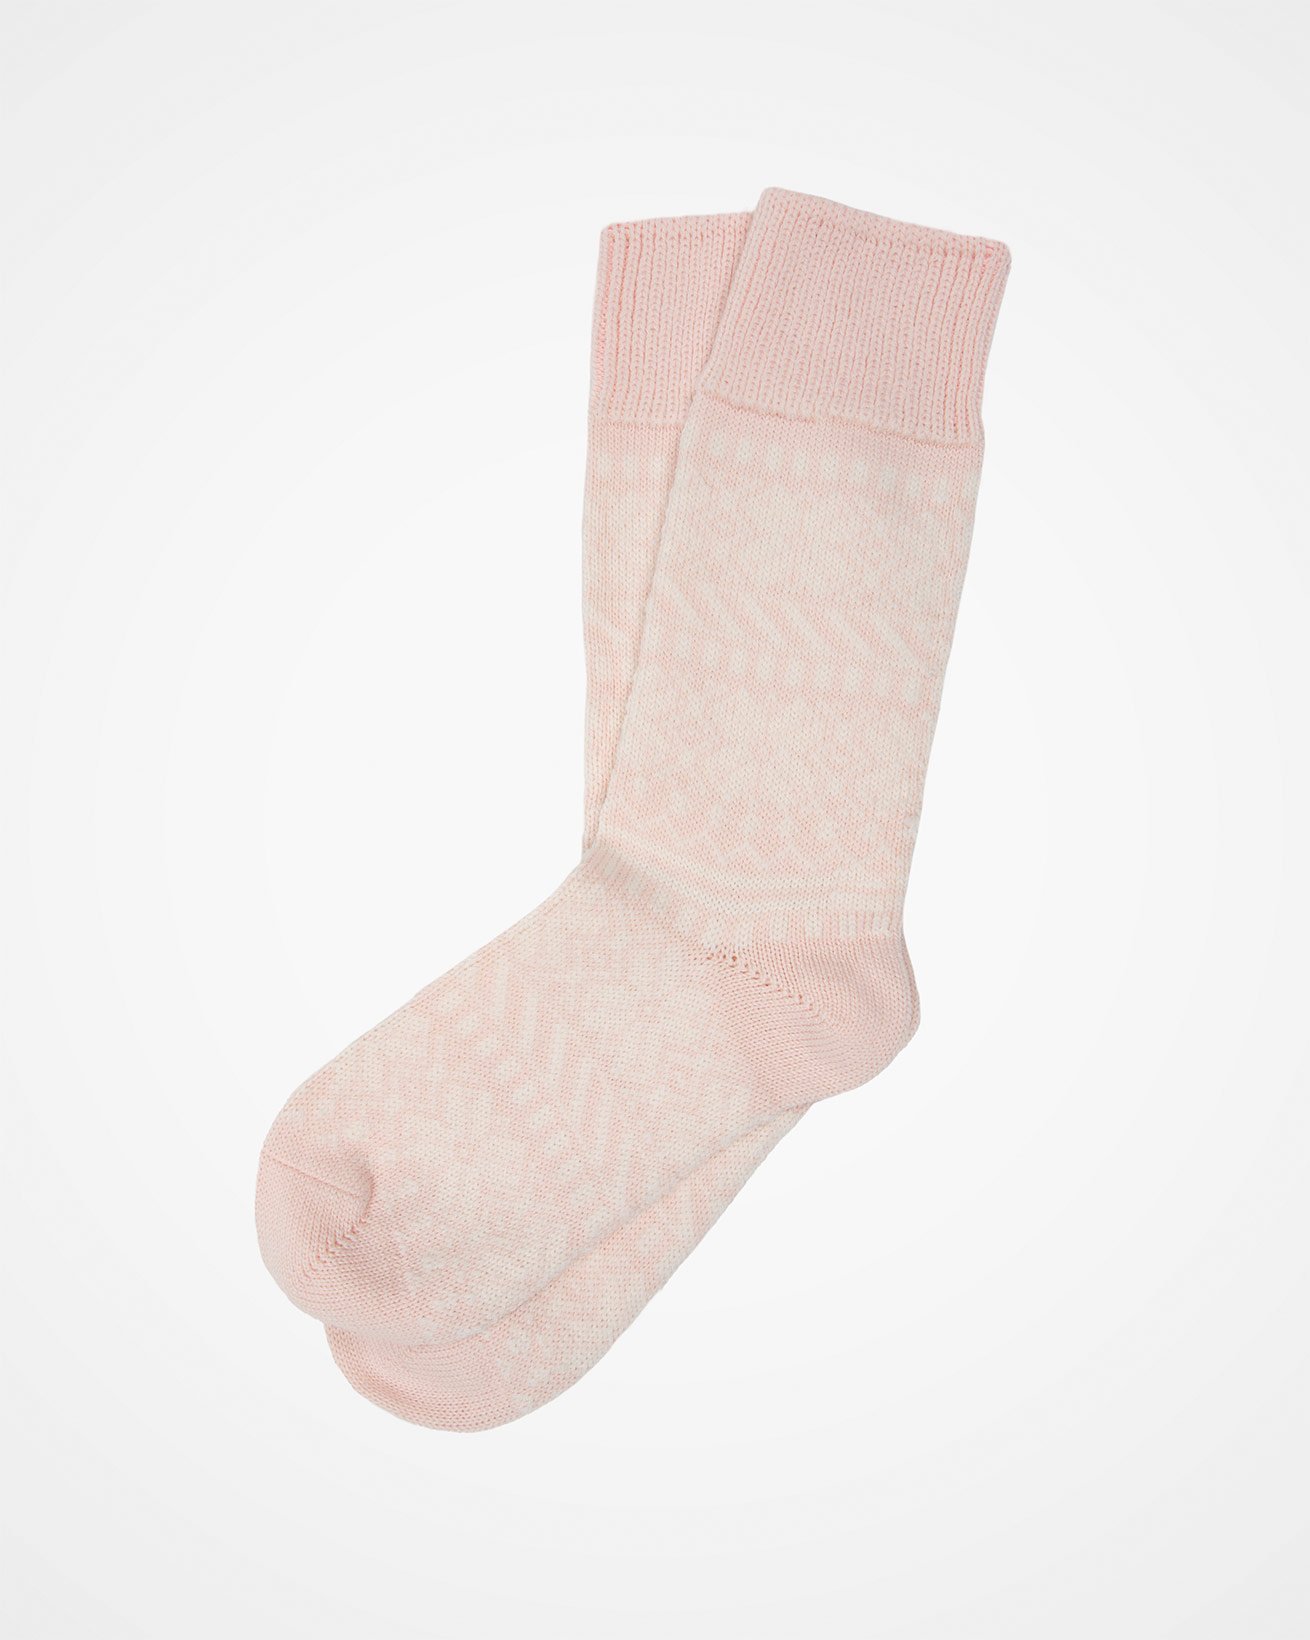 7761_ladies-fairisle-merino-cotton-socks_peony_flat.jpg